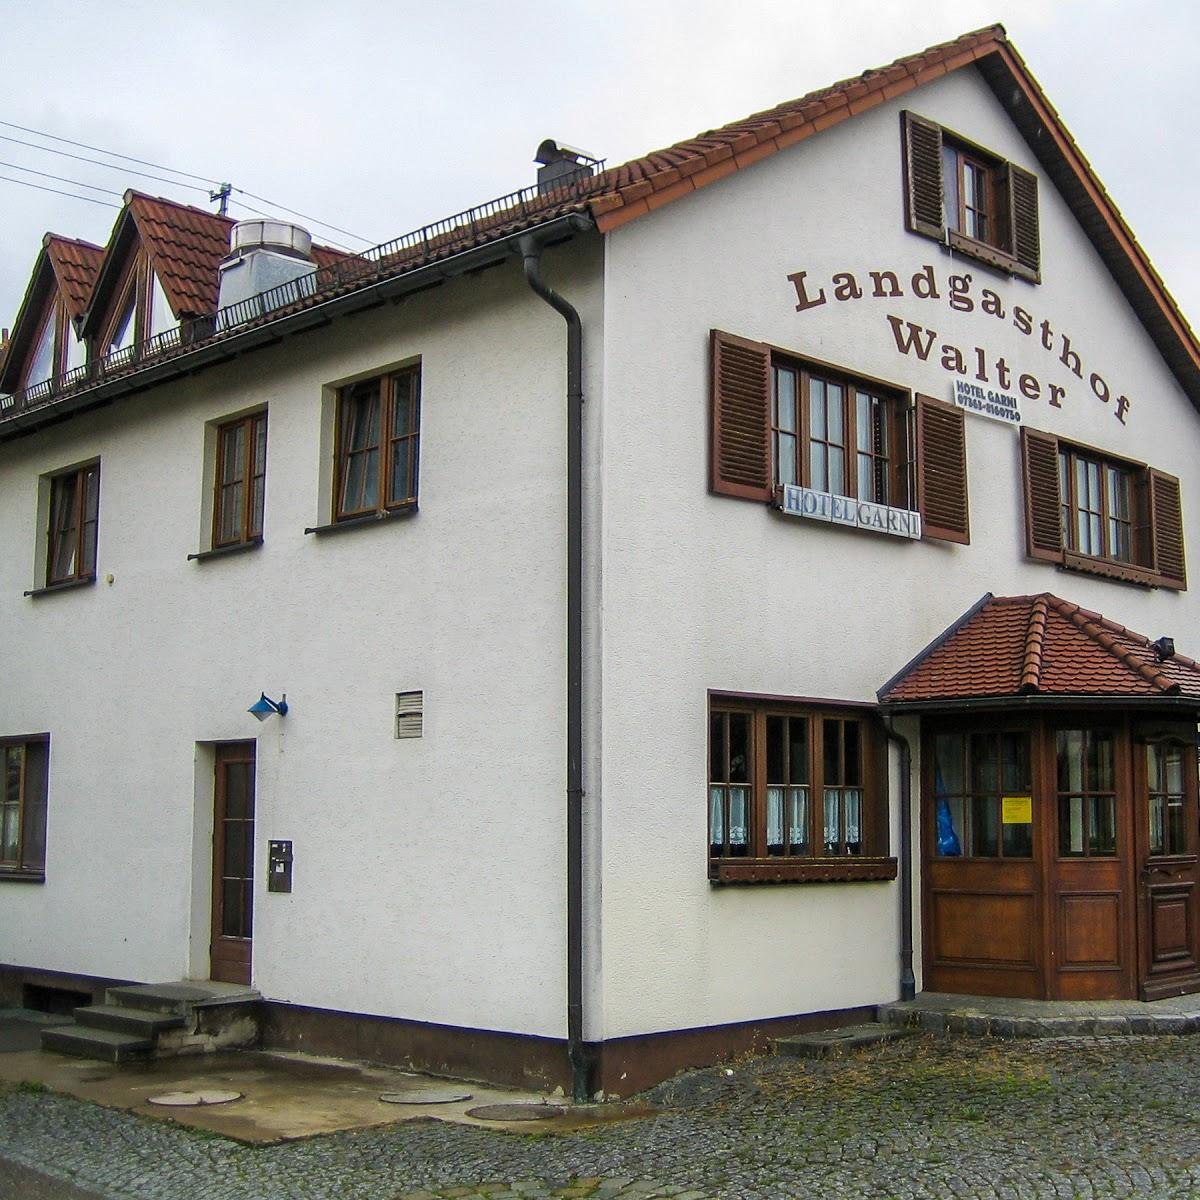 Restaurant "Landgasthof Hotel Walter" in Westhausen